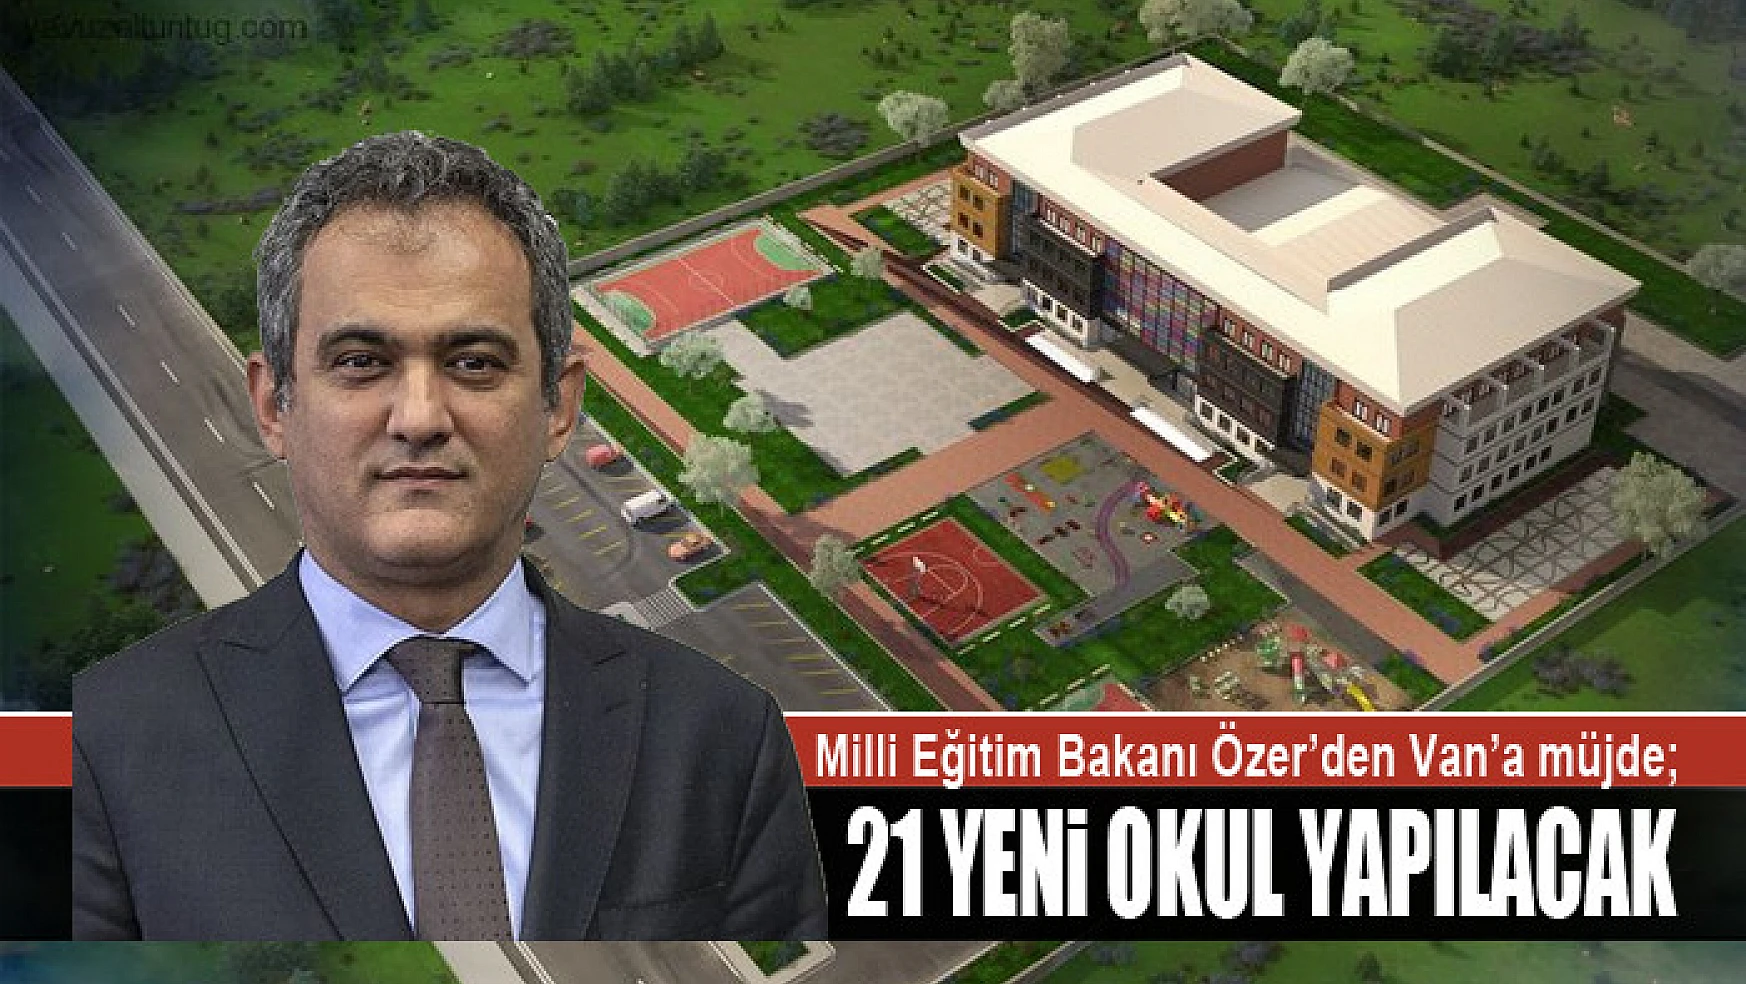 Milli Eğitim Bakanı Özer'den Van'a müjde 21 yeni okul yapılacak